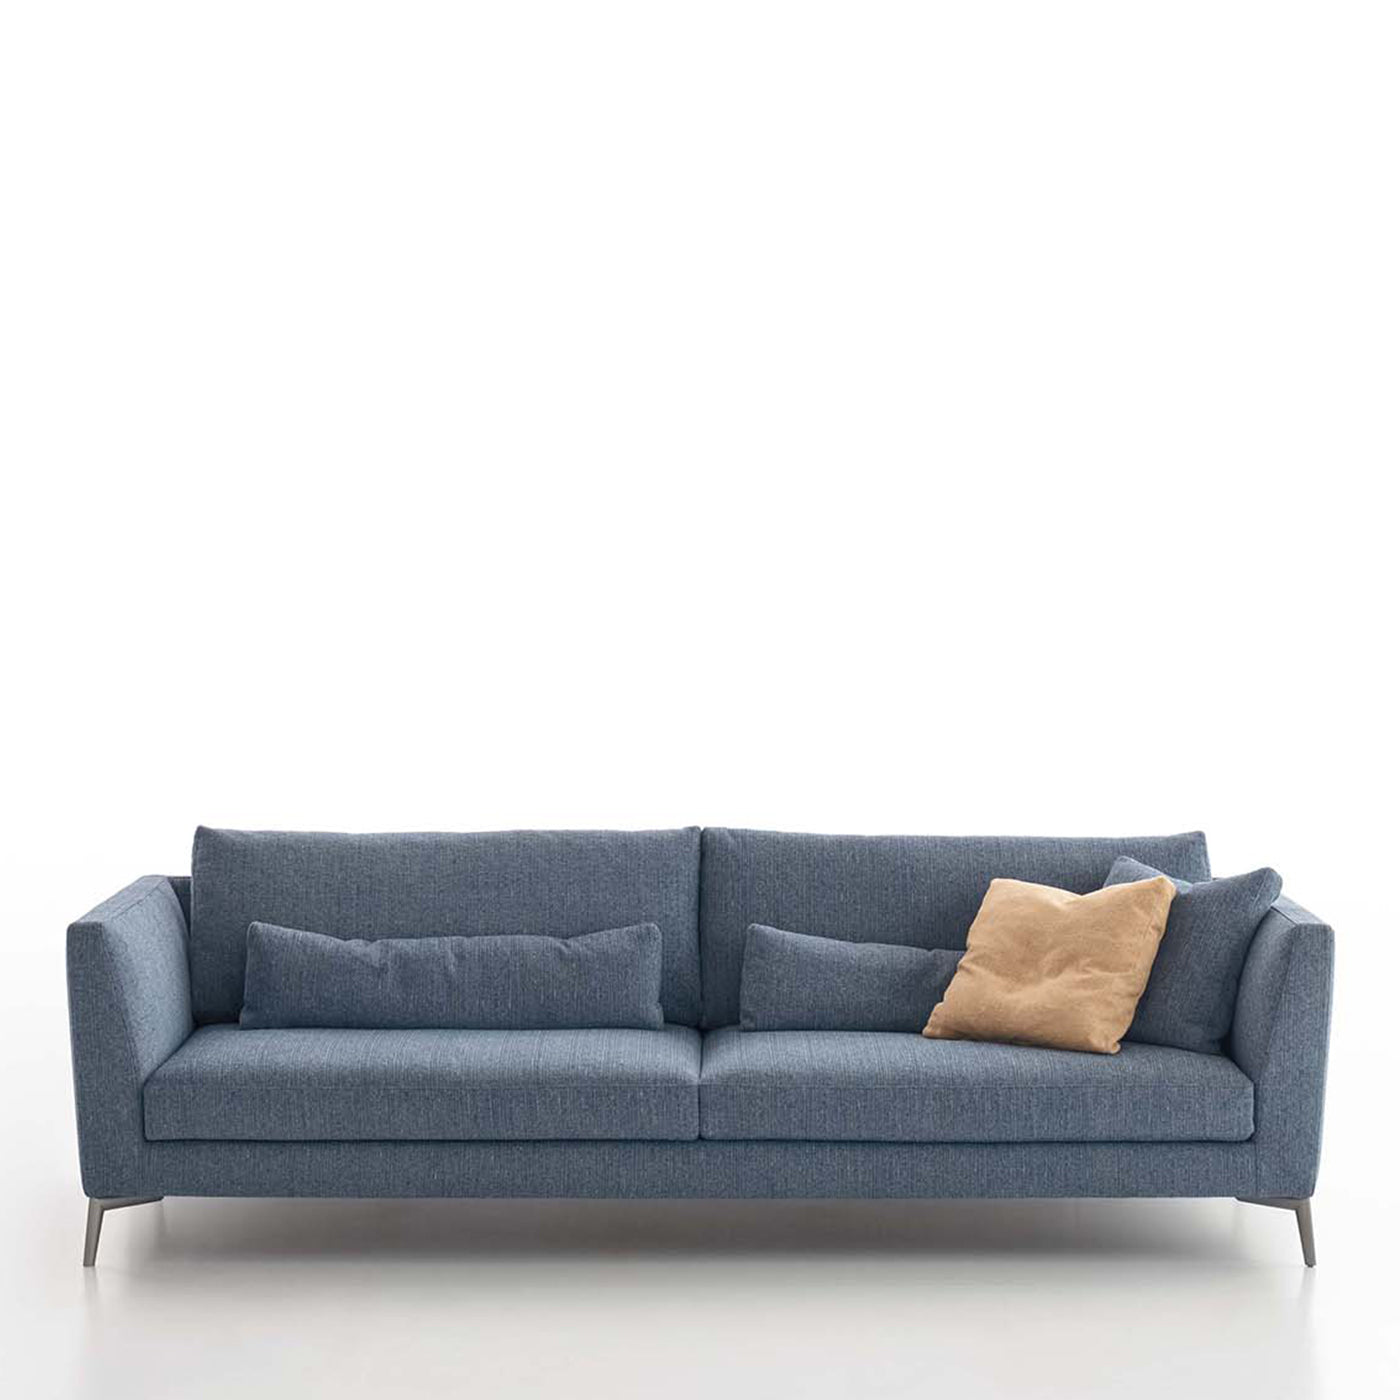 Eliot Blue Sofa by Giuseppe Bavuso - Alternative view 2